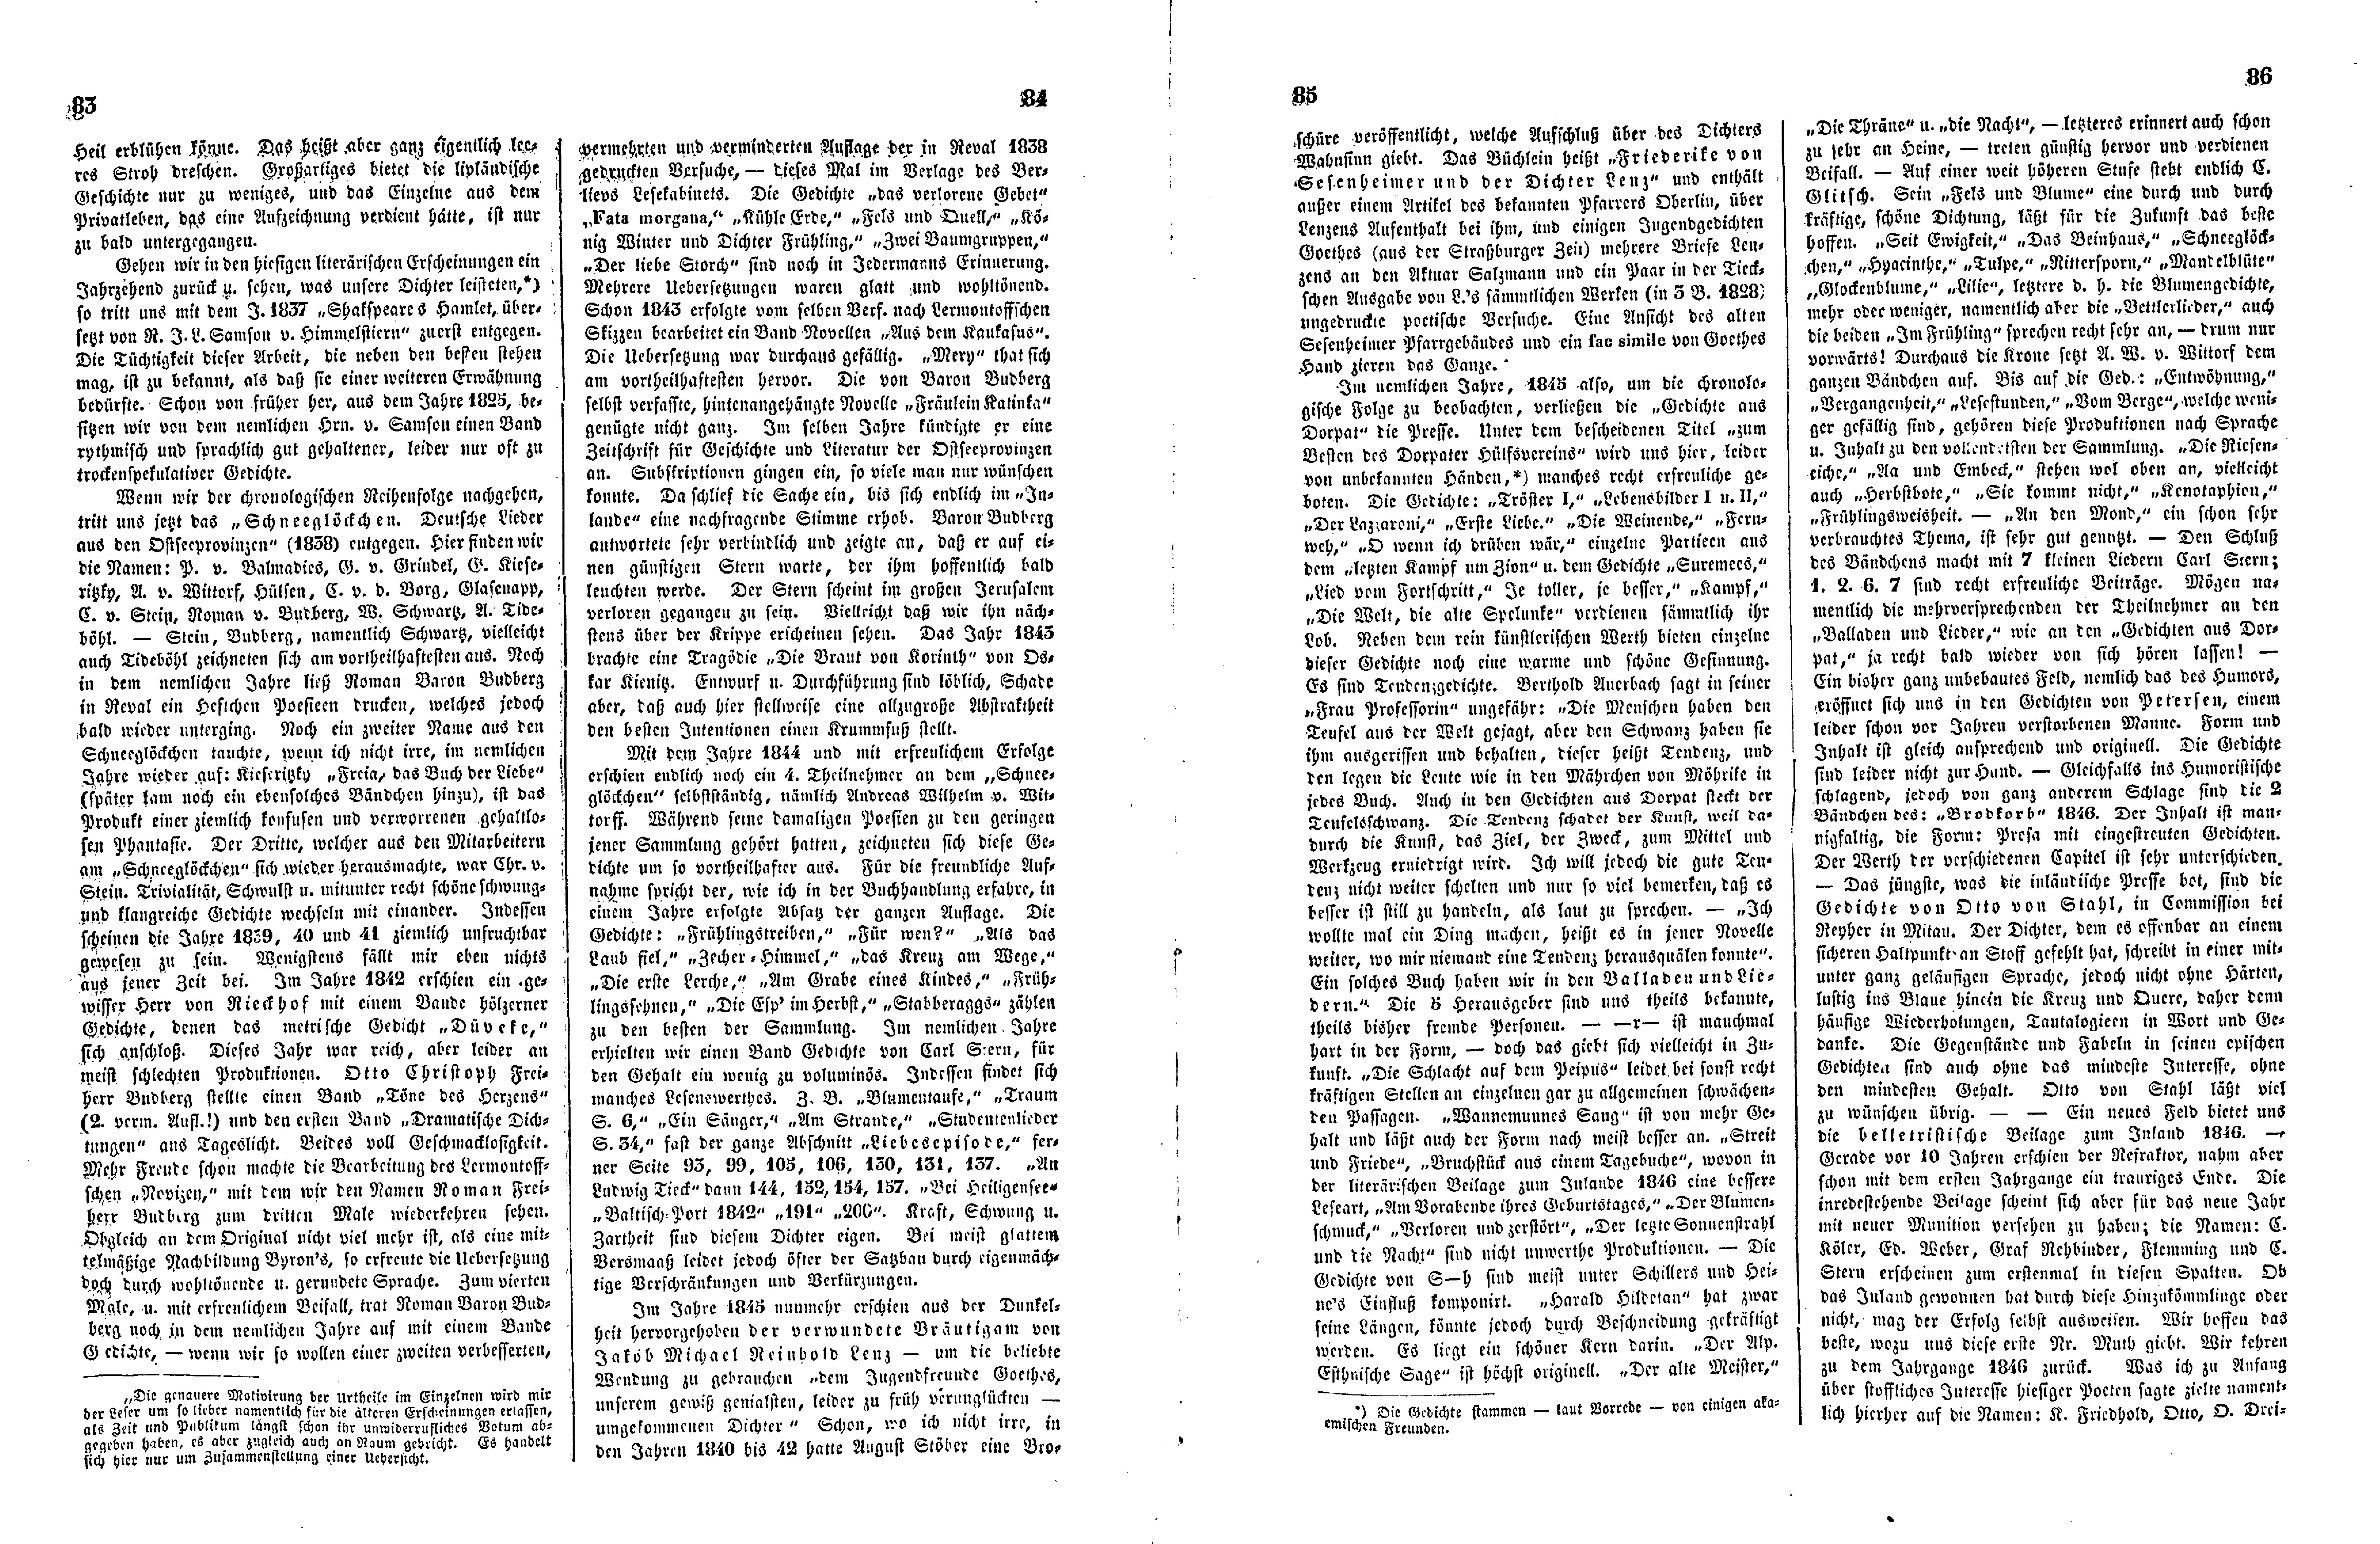 Das Inland [12] (1847) | 26. (83-86) Haupttext